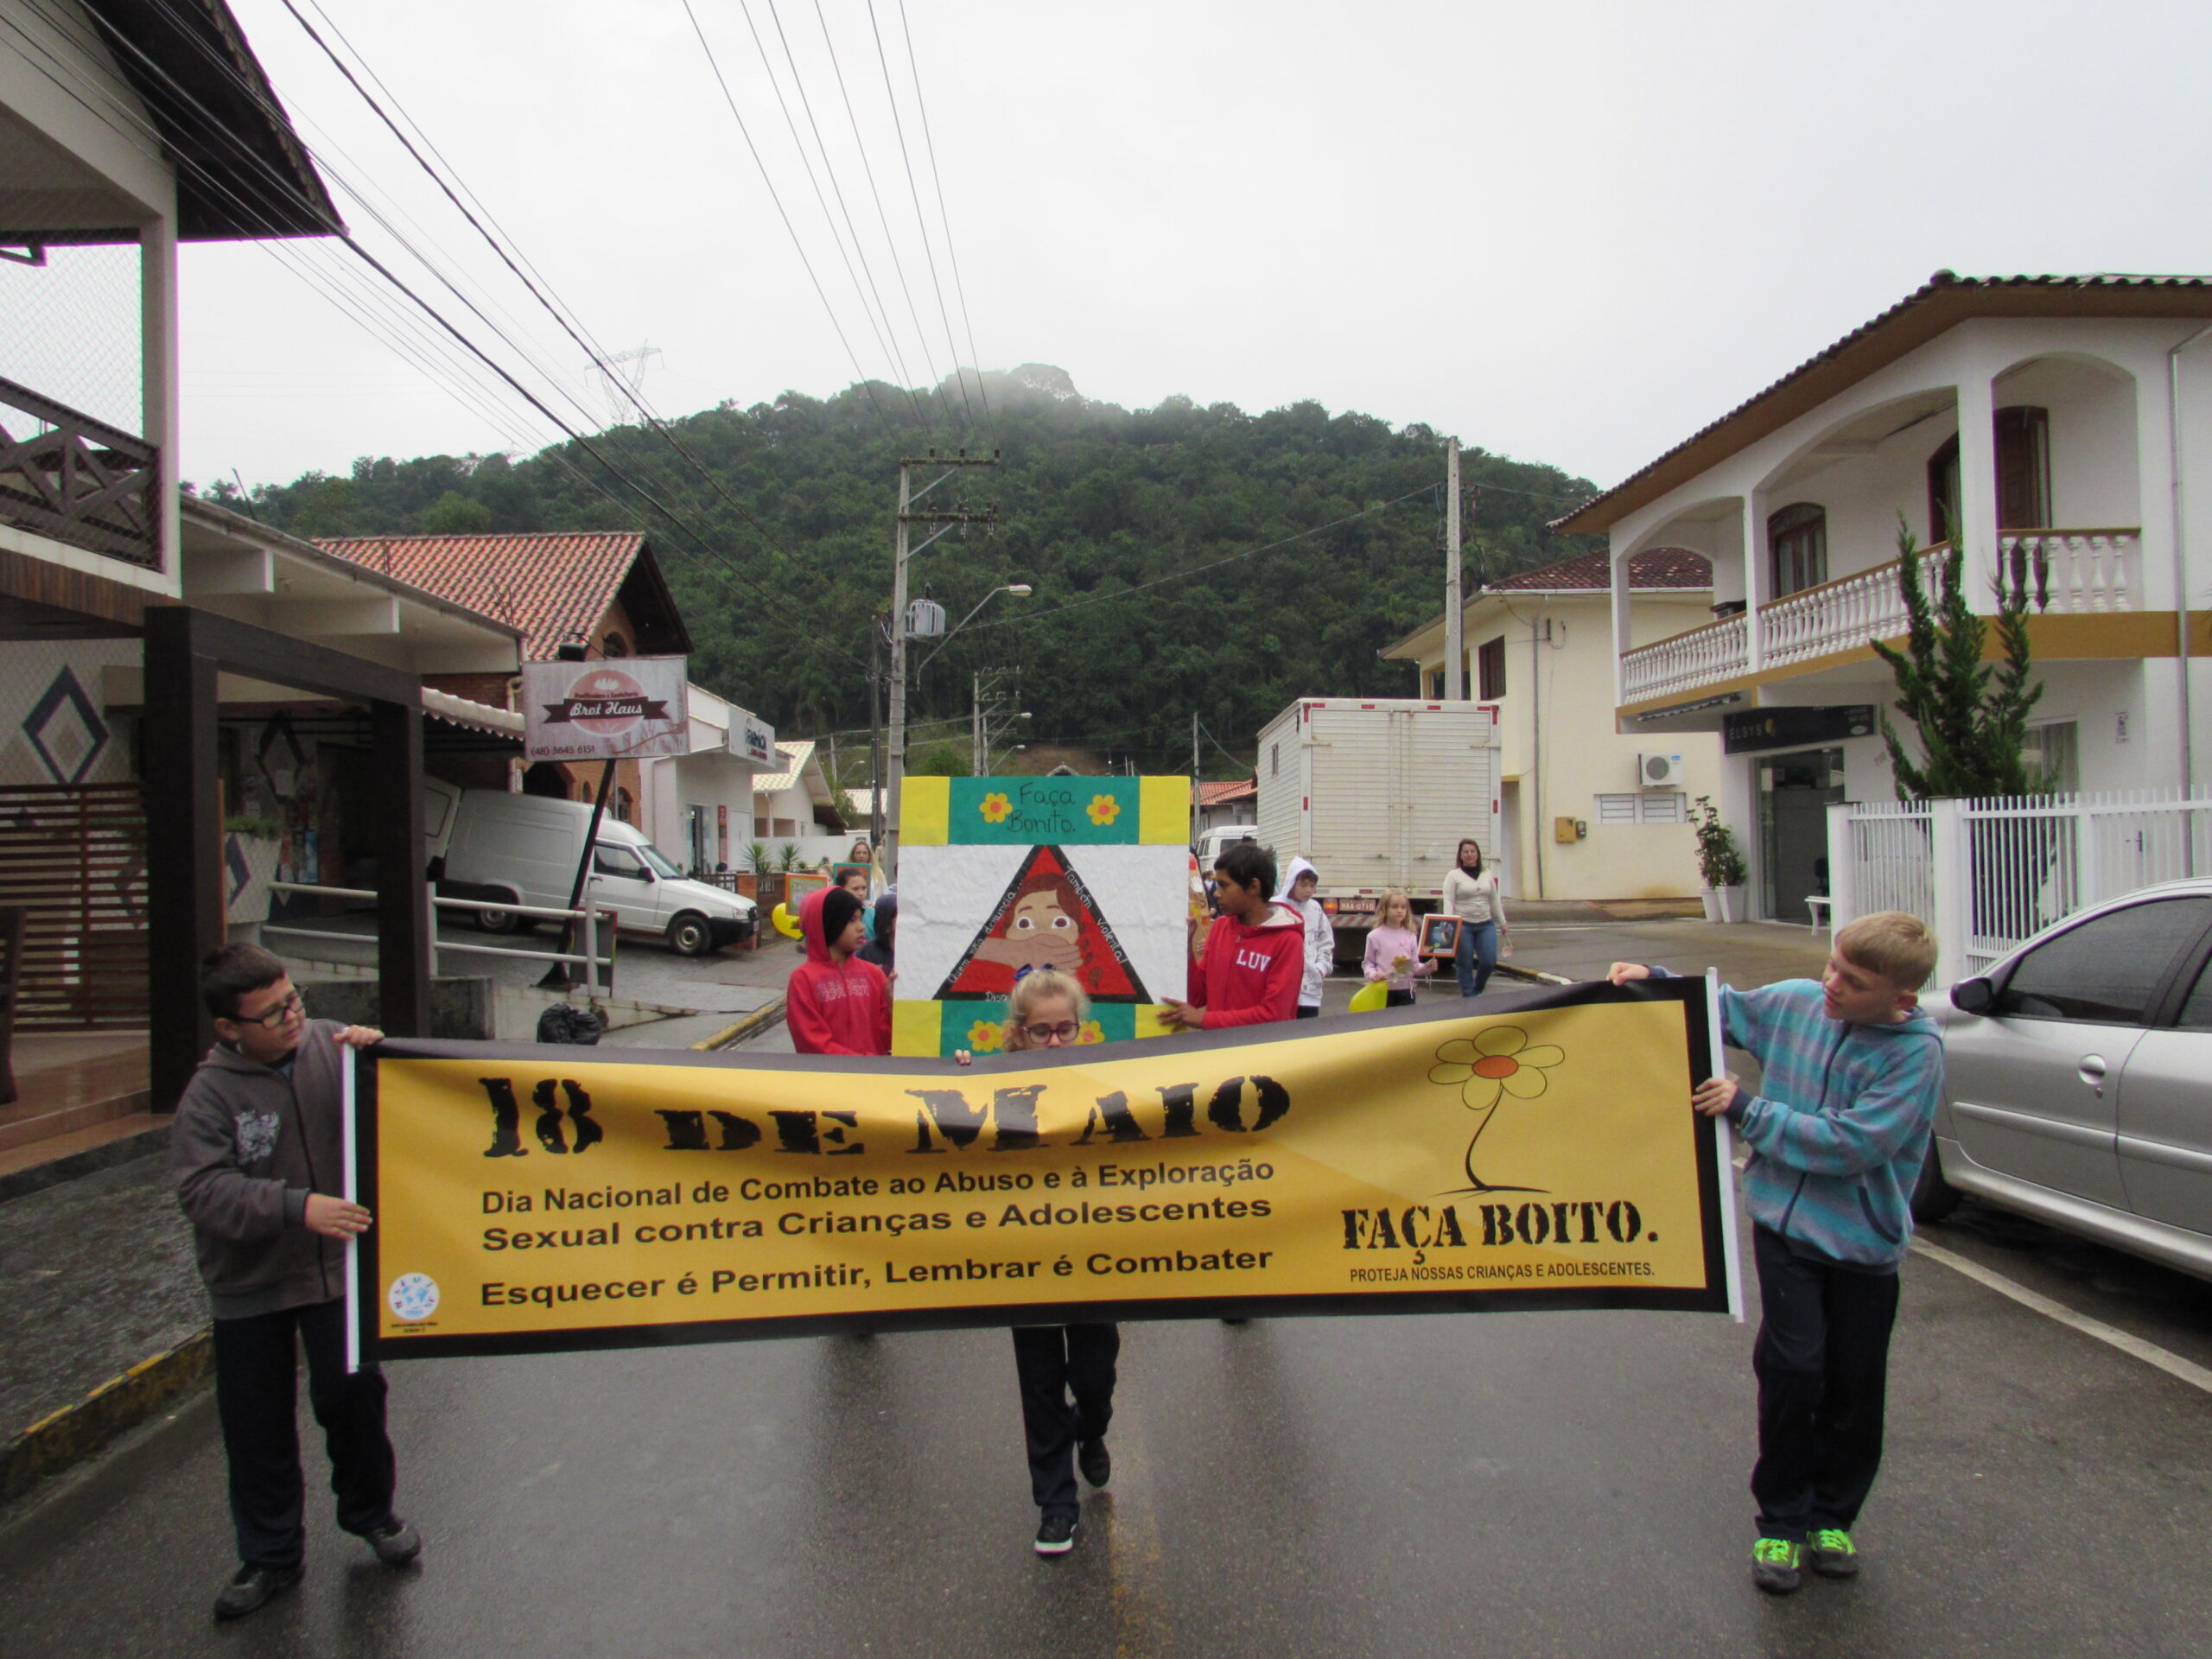 mobilização de combate ao abuso e exploração sexual de crianças e adolescentes, em São Martinho.